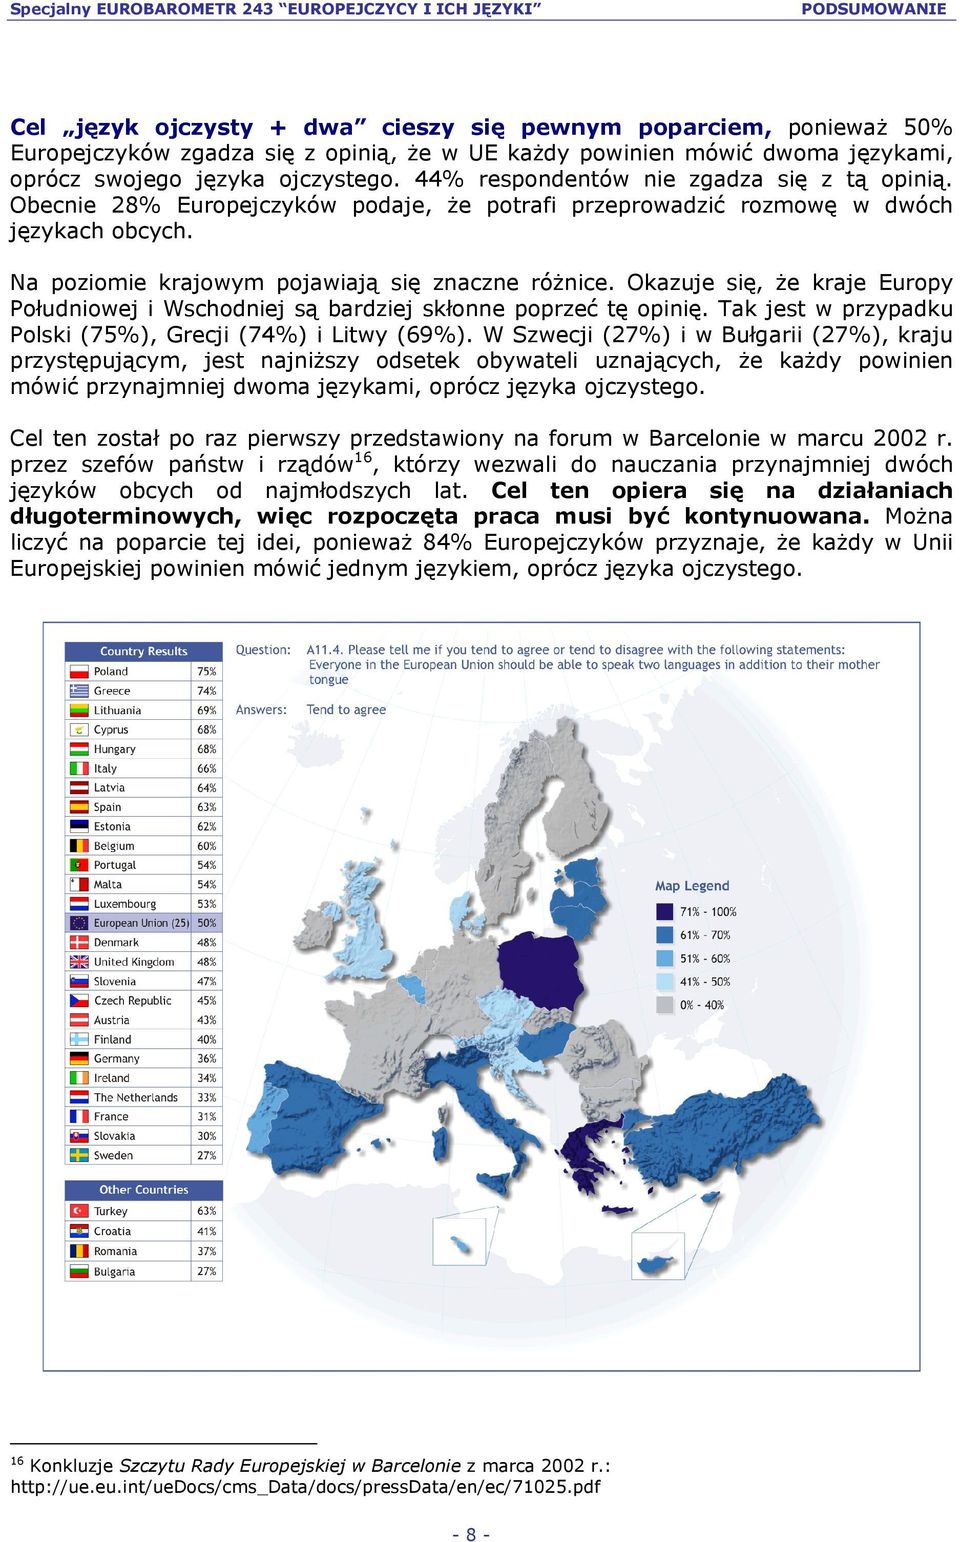 Okazuje się, że kraje Europy Południowej i Wschodniej są bardziej skłonne poprzeć tę opinię. Tak jest w przypadku Polski (75%), Grecji (74%) i Litwy (69%).